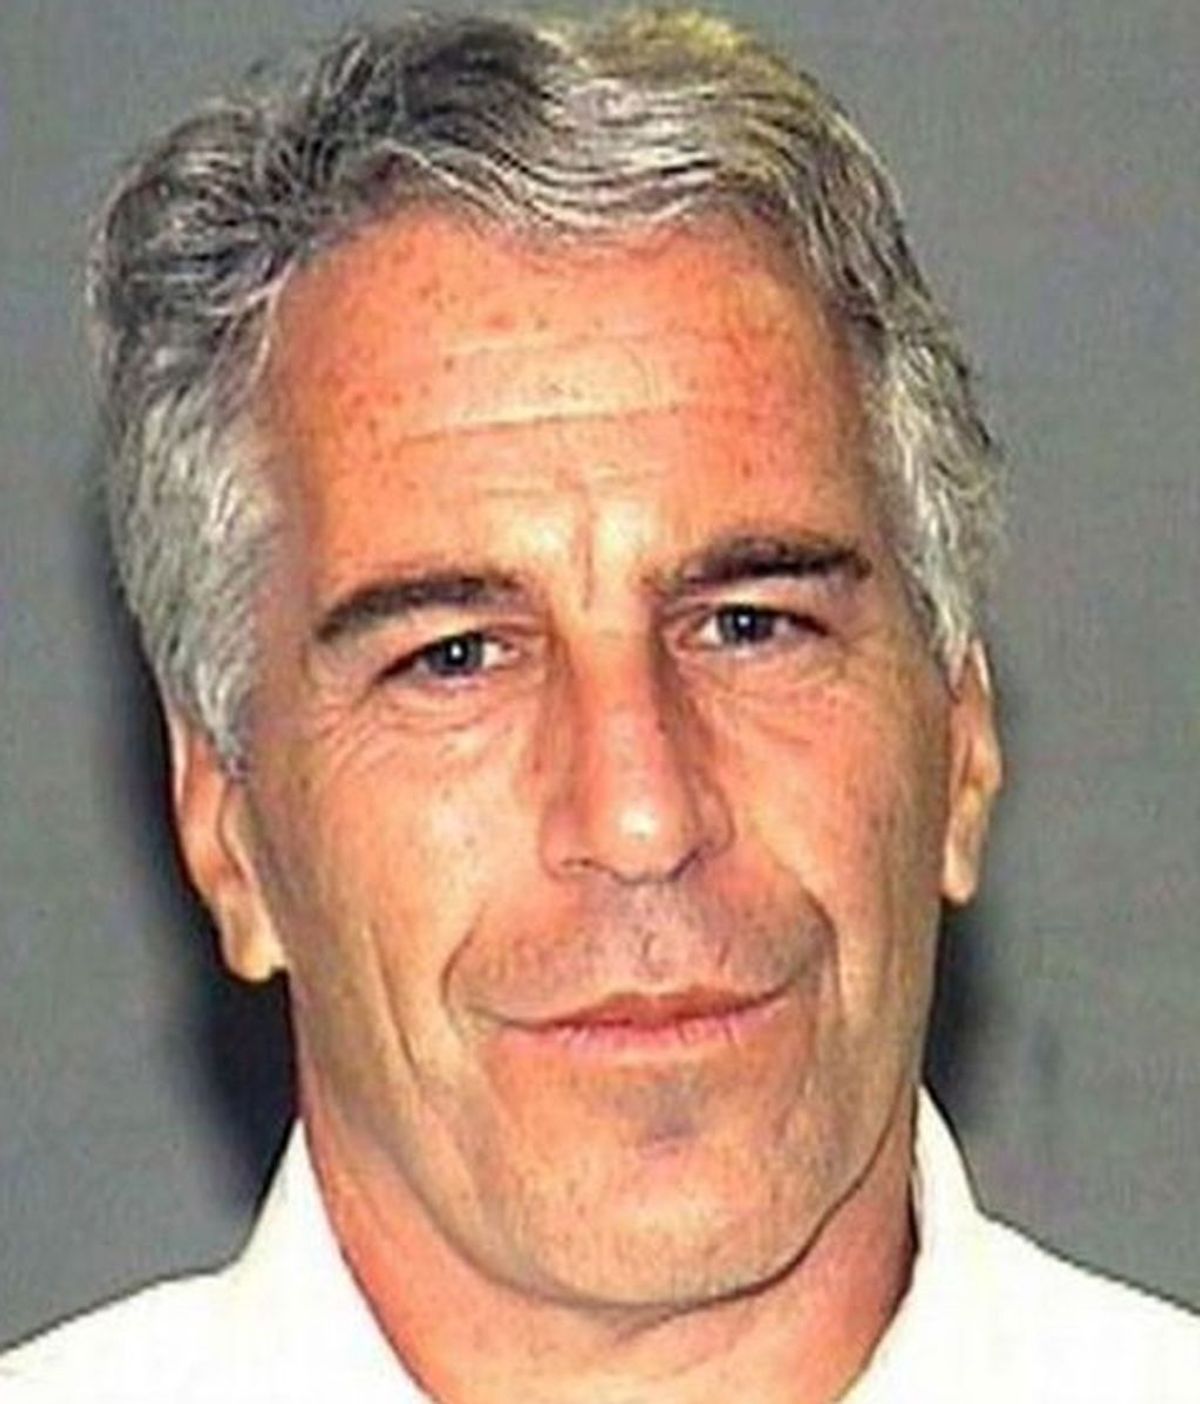 La isla de las orgías de Epstein: que te atacara un tiburón era mejor que eso